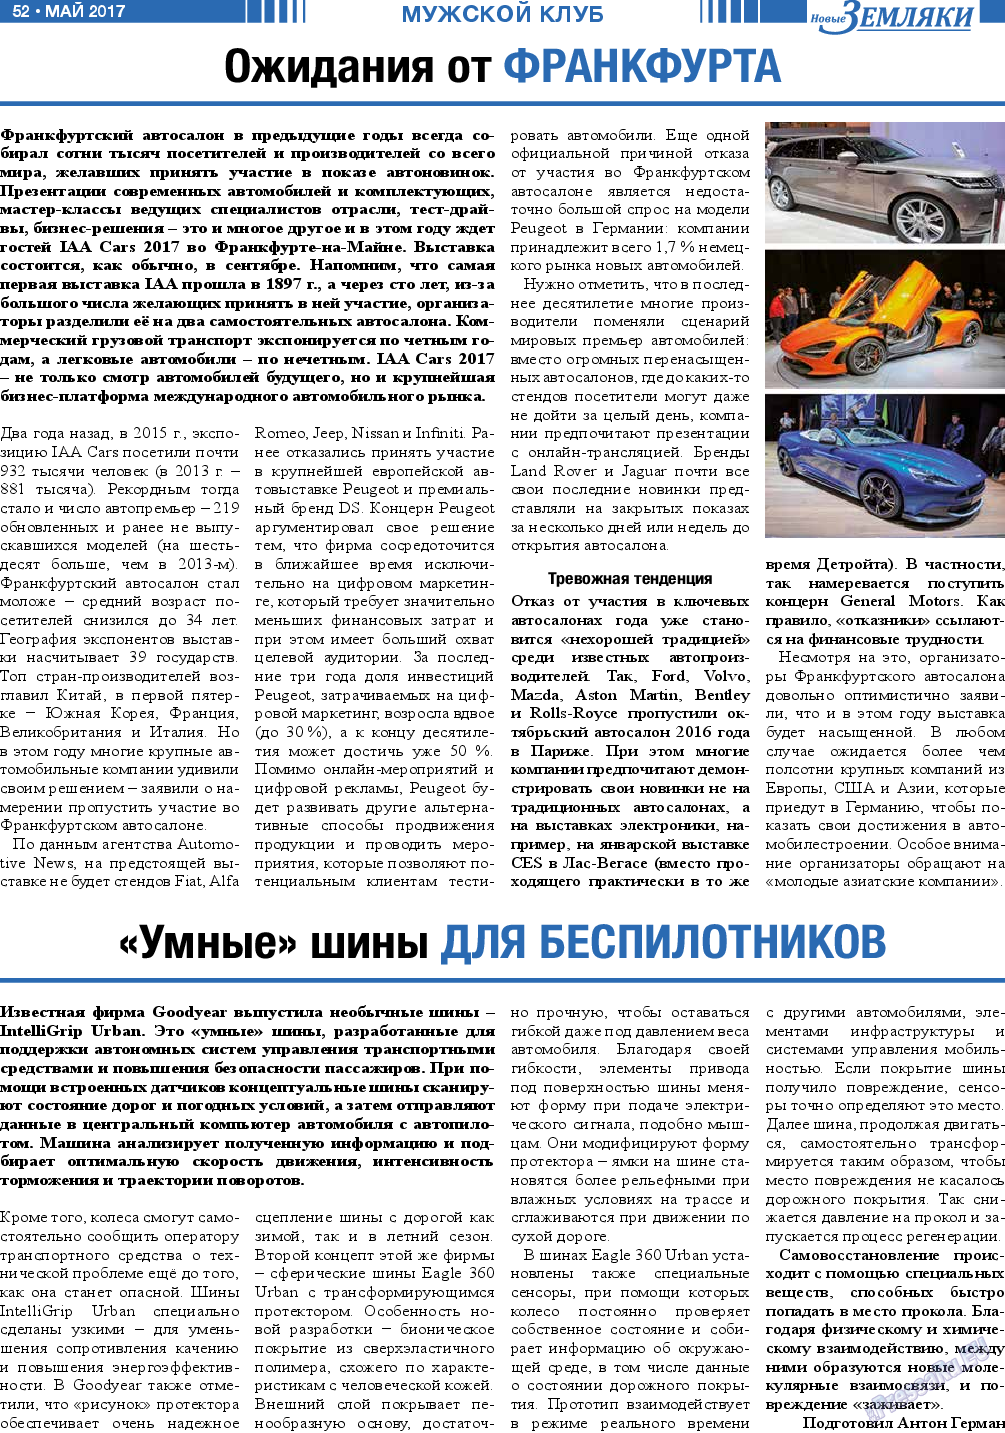 Новые Земляки, газета. 2017 №5 стр.52